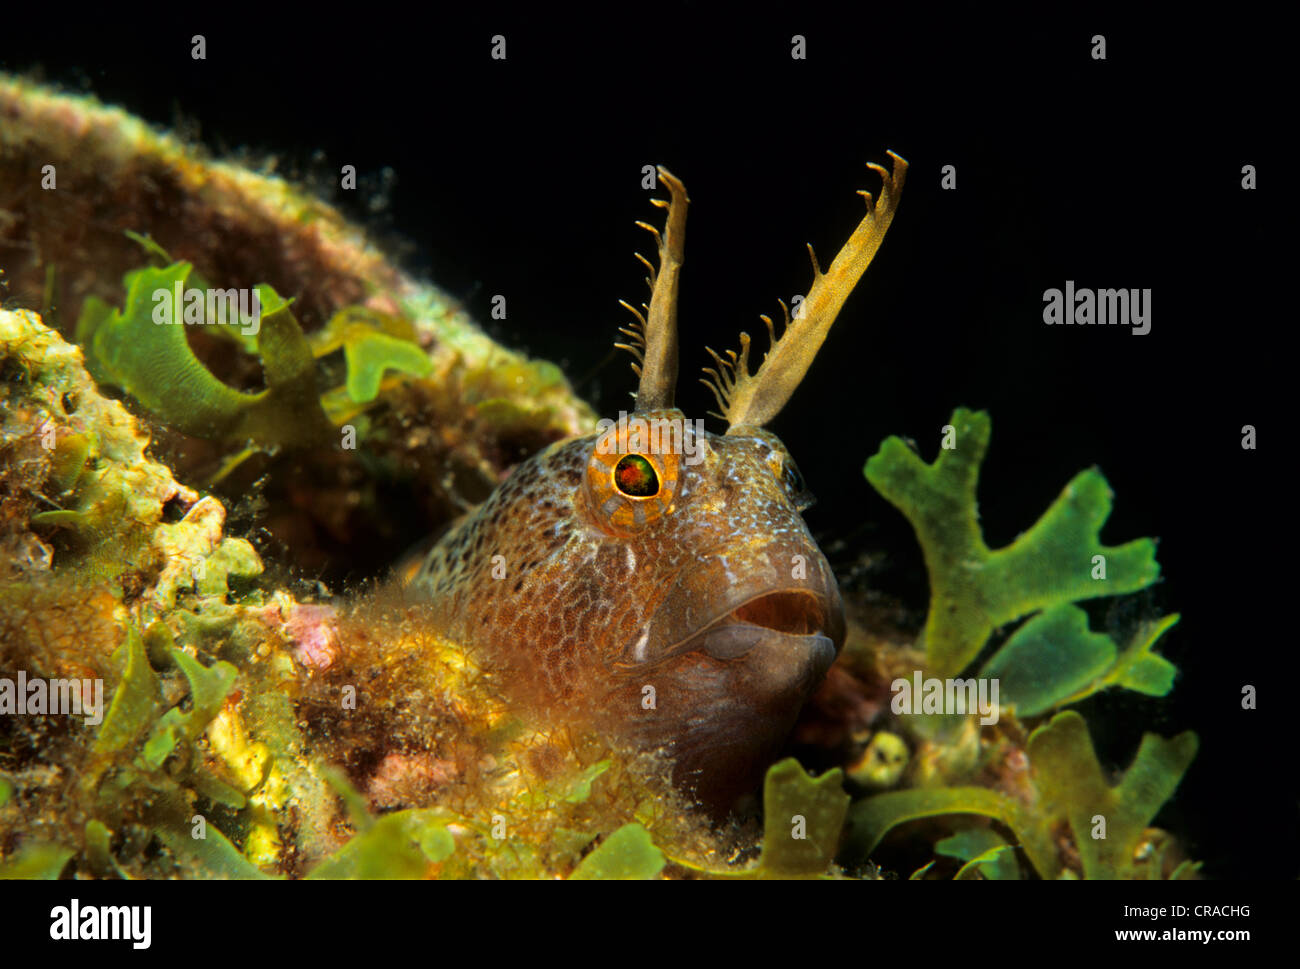 Tentáculos- blenny (Parablennius tentacularis) en busca de refugio con algas, Fira, Santorini, Grecia, las Islas Cícladas, Del Mar Egeo Foto de stock